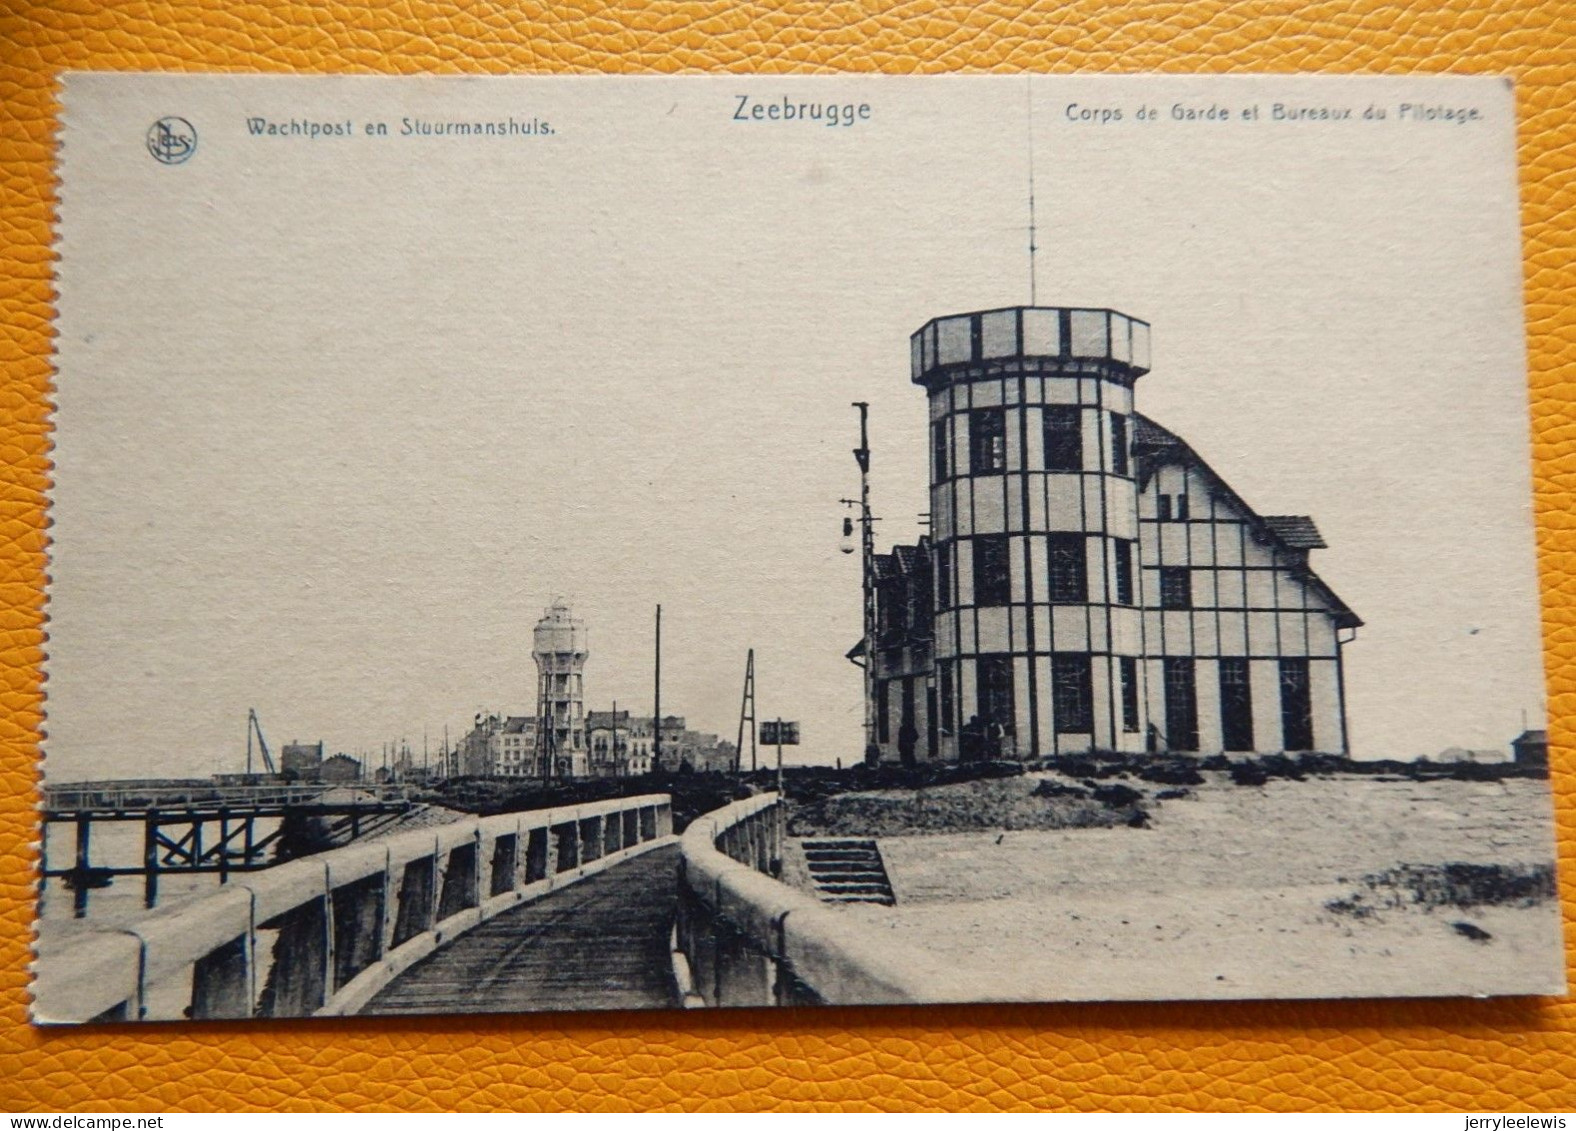 ZEEBRUGGE  - Wachtpost En Stuurmanshuis  - Corps De Garde Et Bureaux Du Pilotage - Zeebrugge